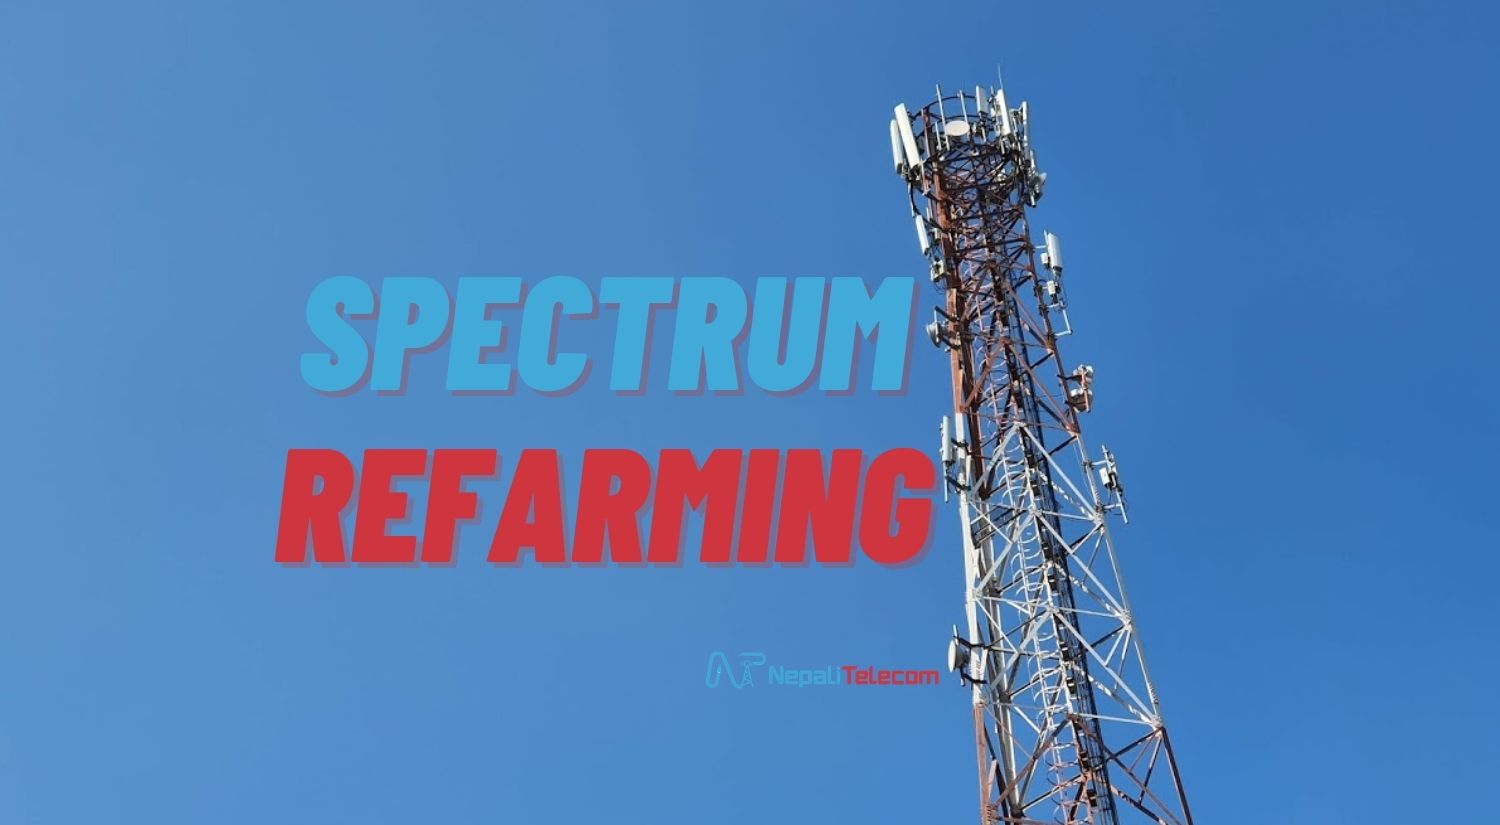 Spectrum refarming